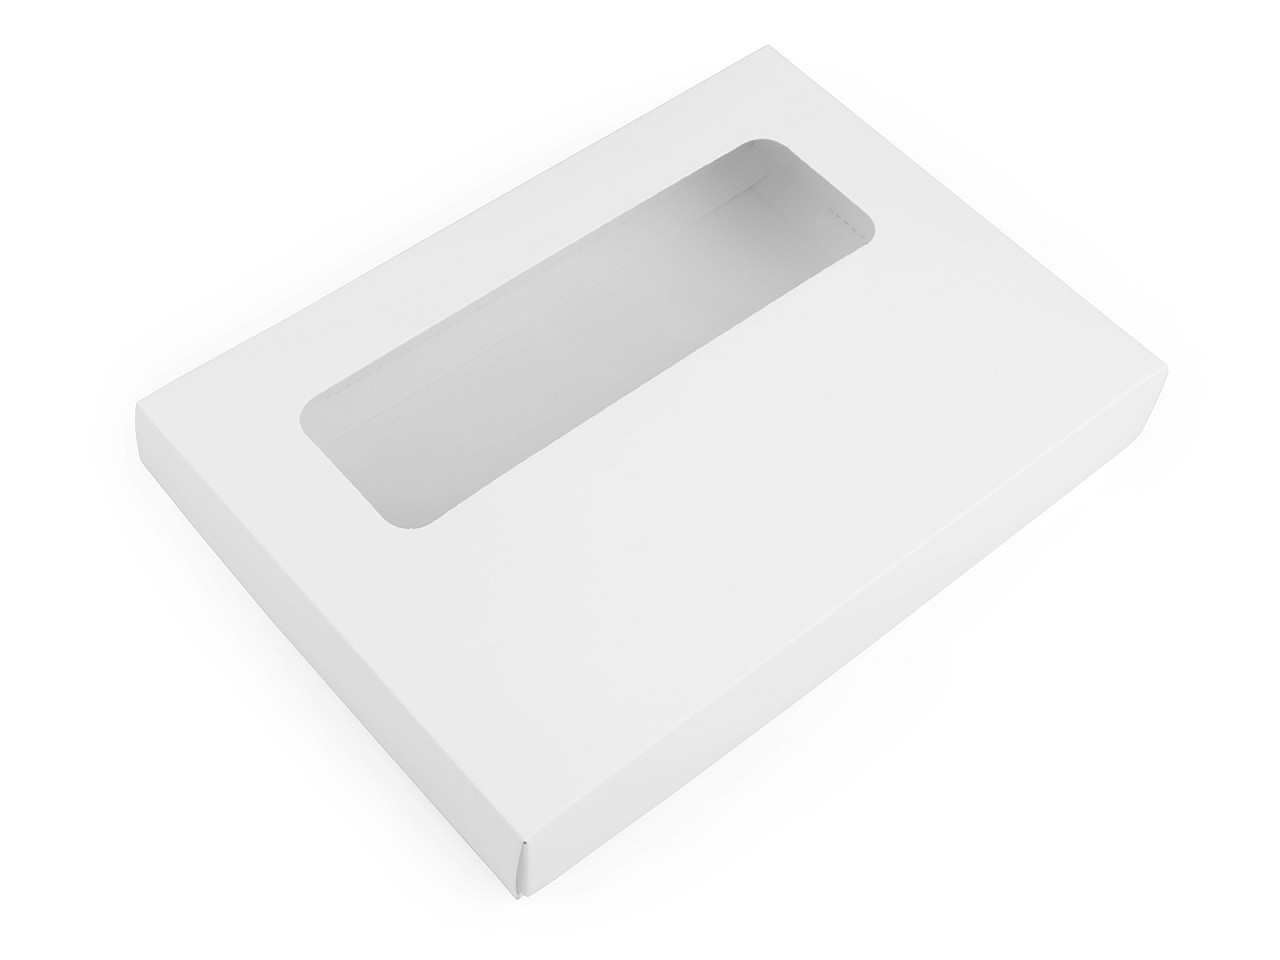 Textillux.sk - produkt Papierová krabica s priehľadom